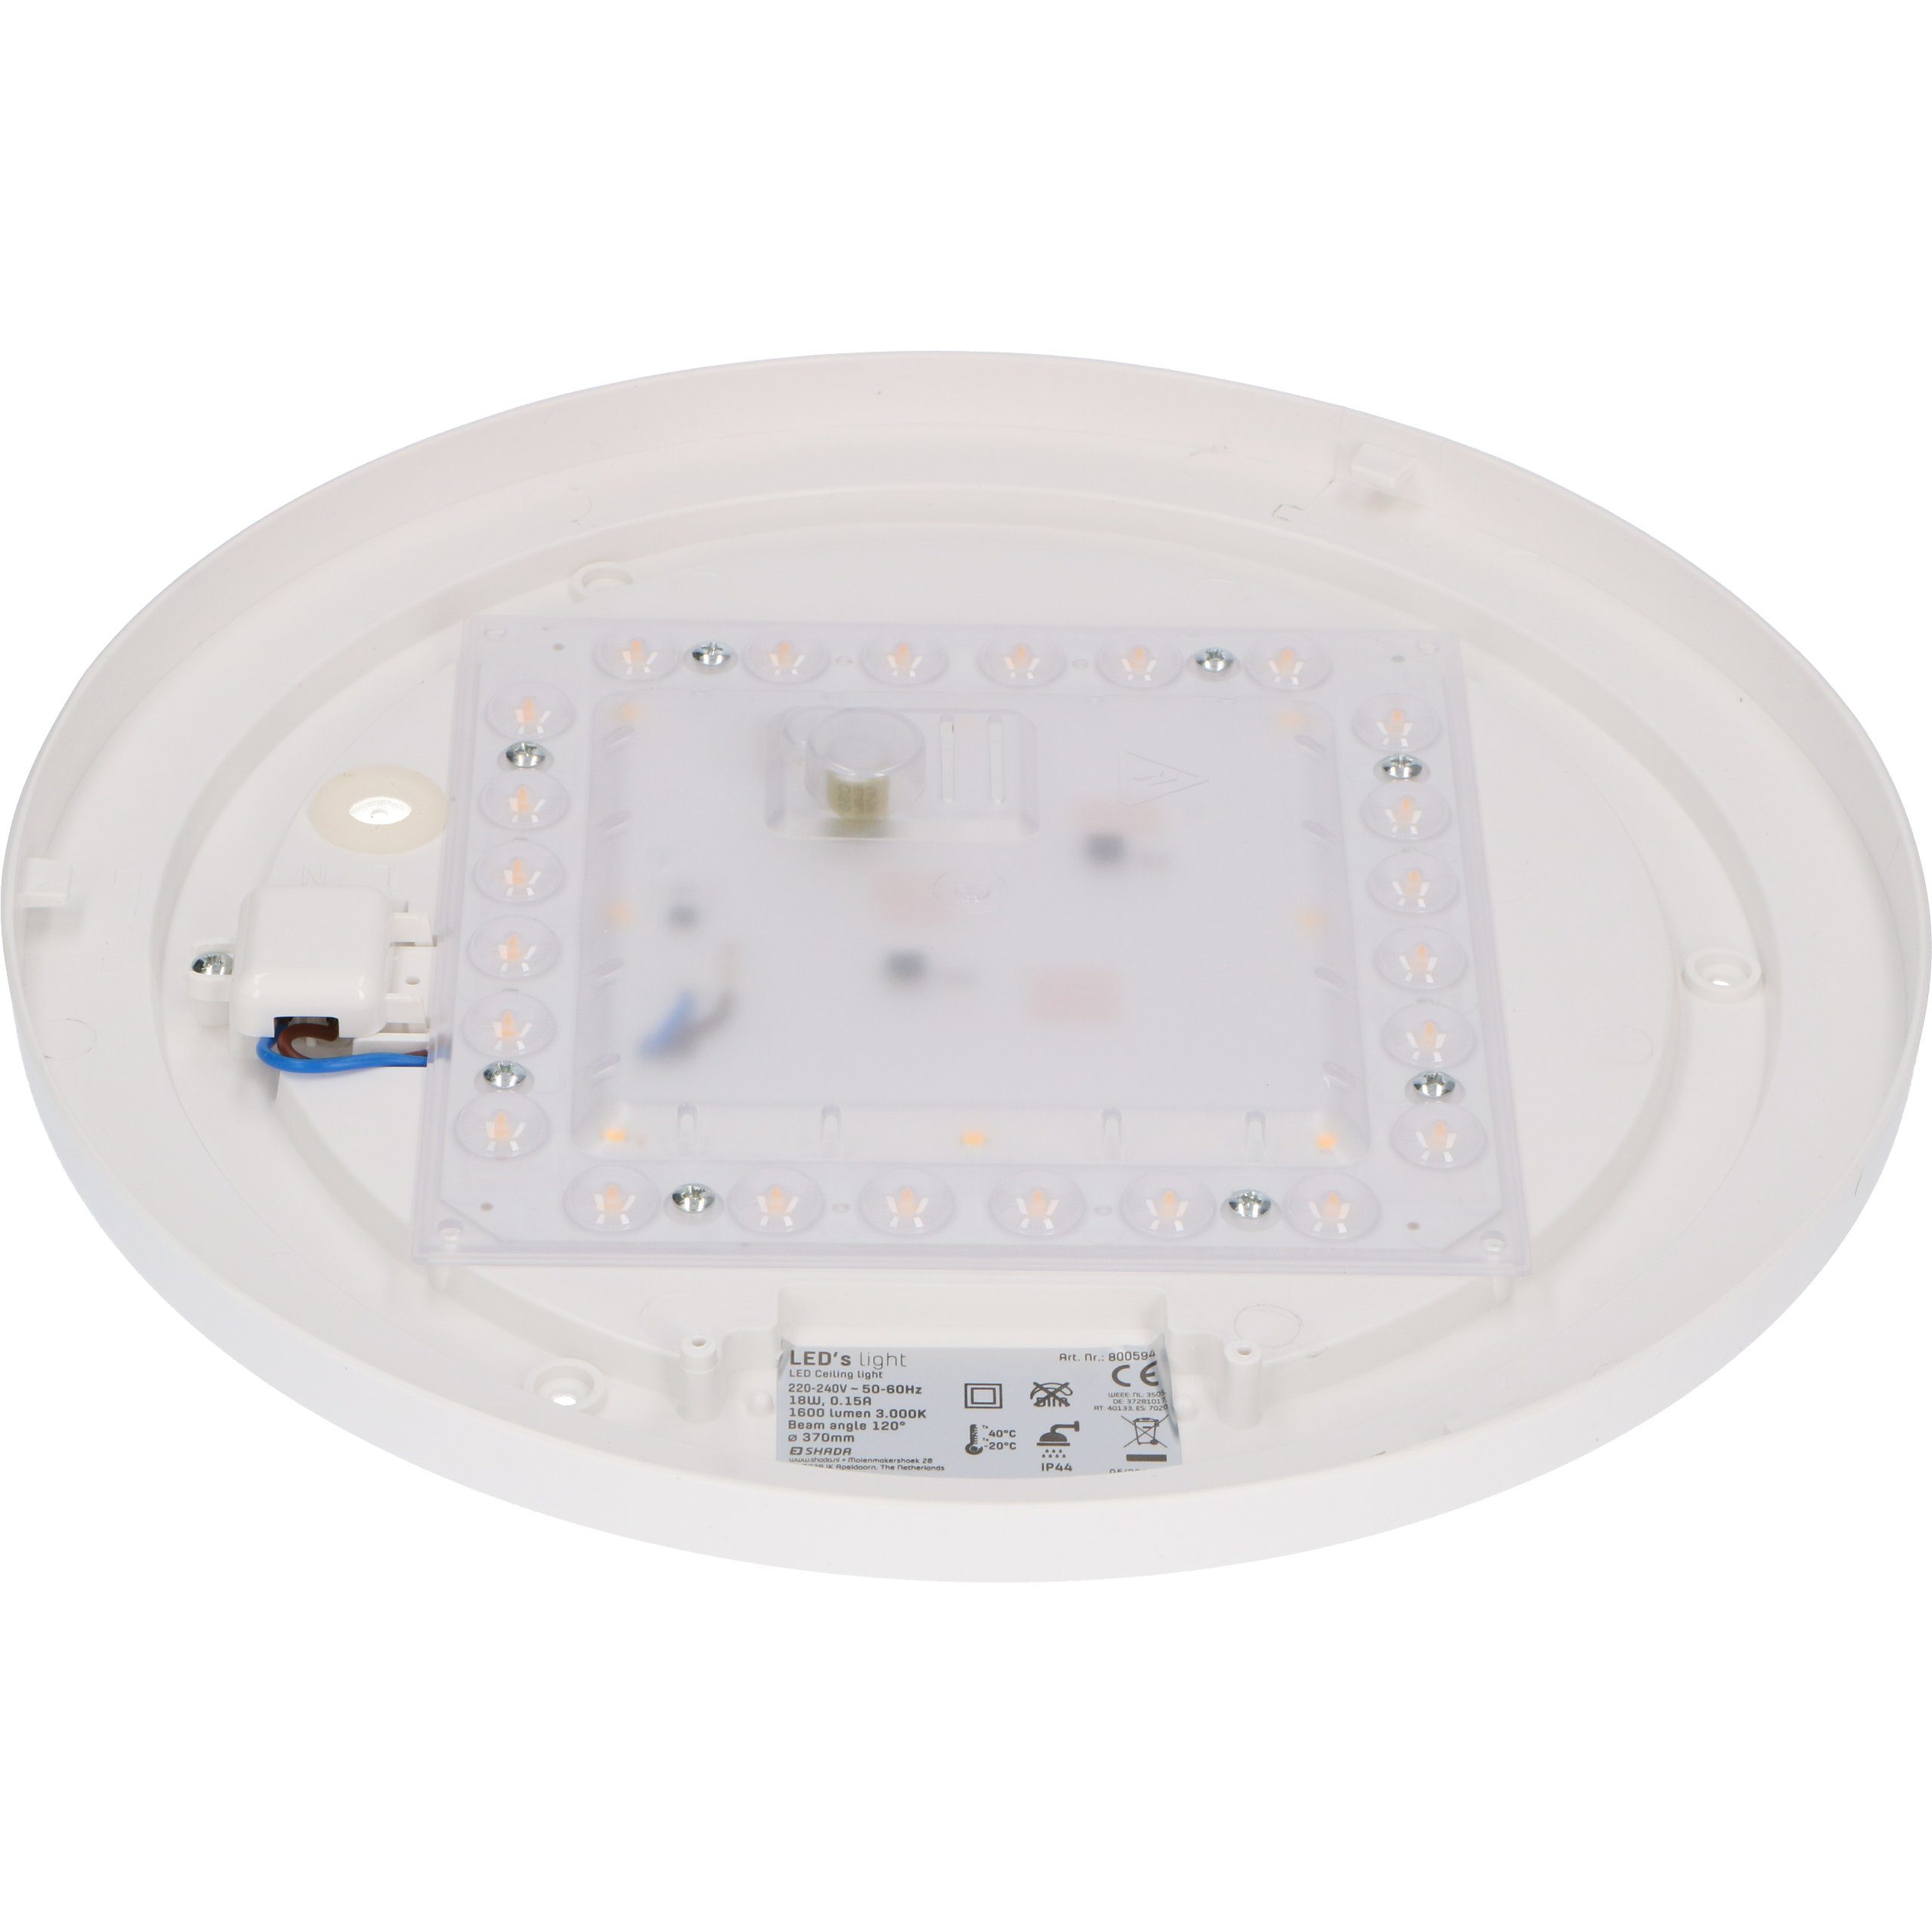 LED, light 3 geeignet 0800594 LED Deckenleuchte warmweiß 37cm IP44 18W LED's Schutzbereich Deckenleuchte,